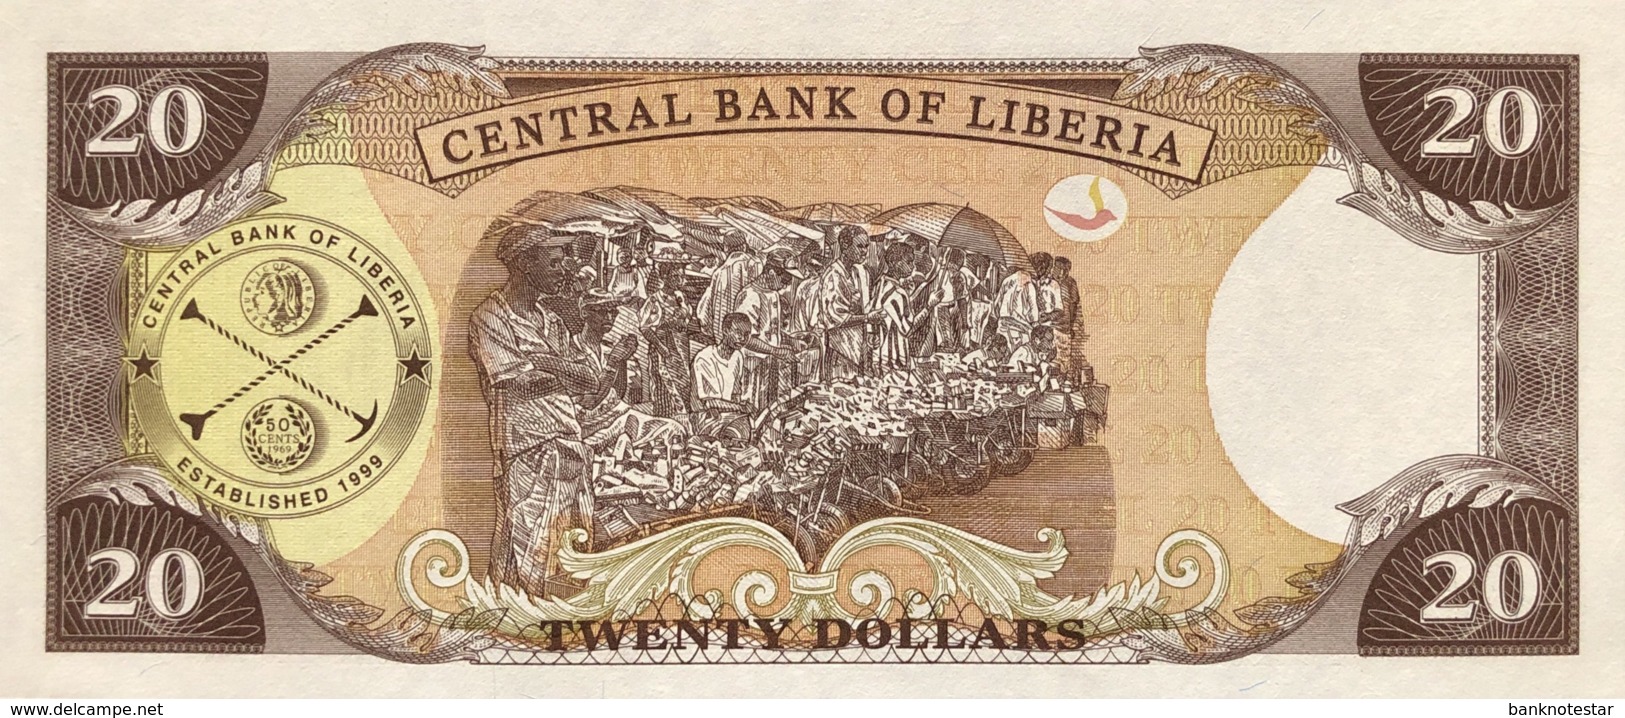 Liberia 20 Dollars, P-28a (2003) - UNC - Liberia